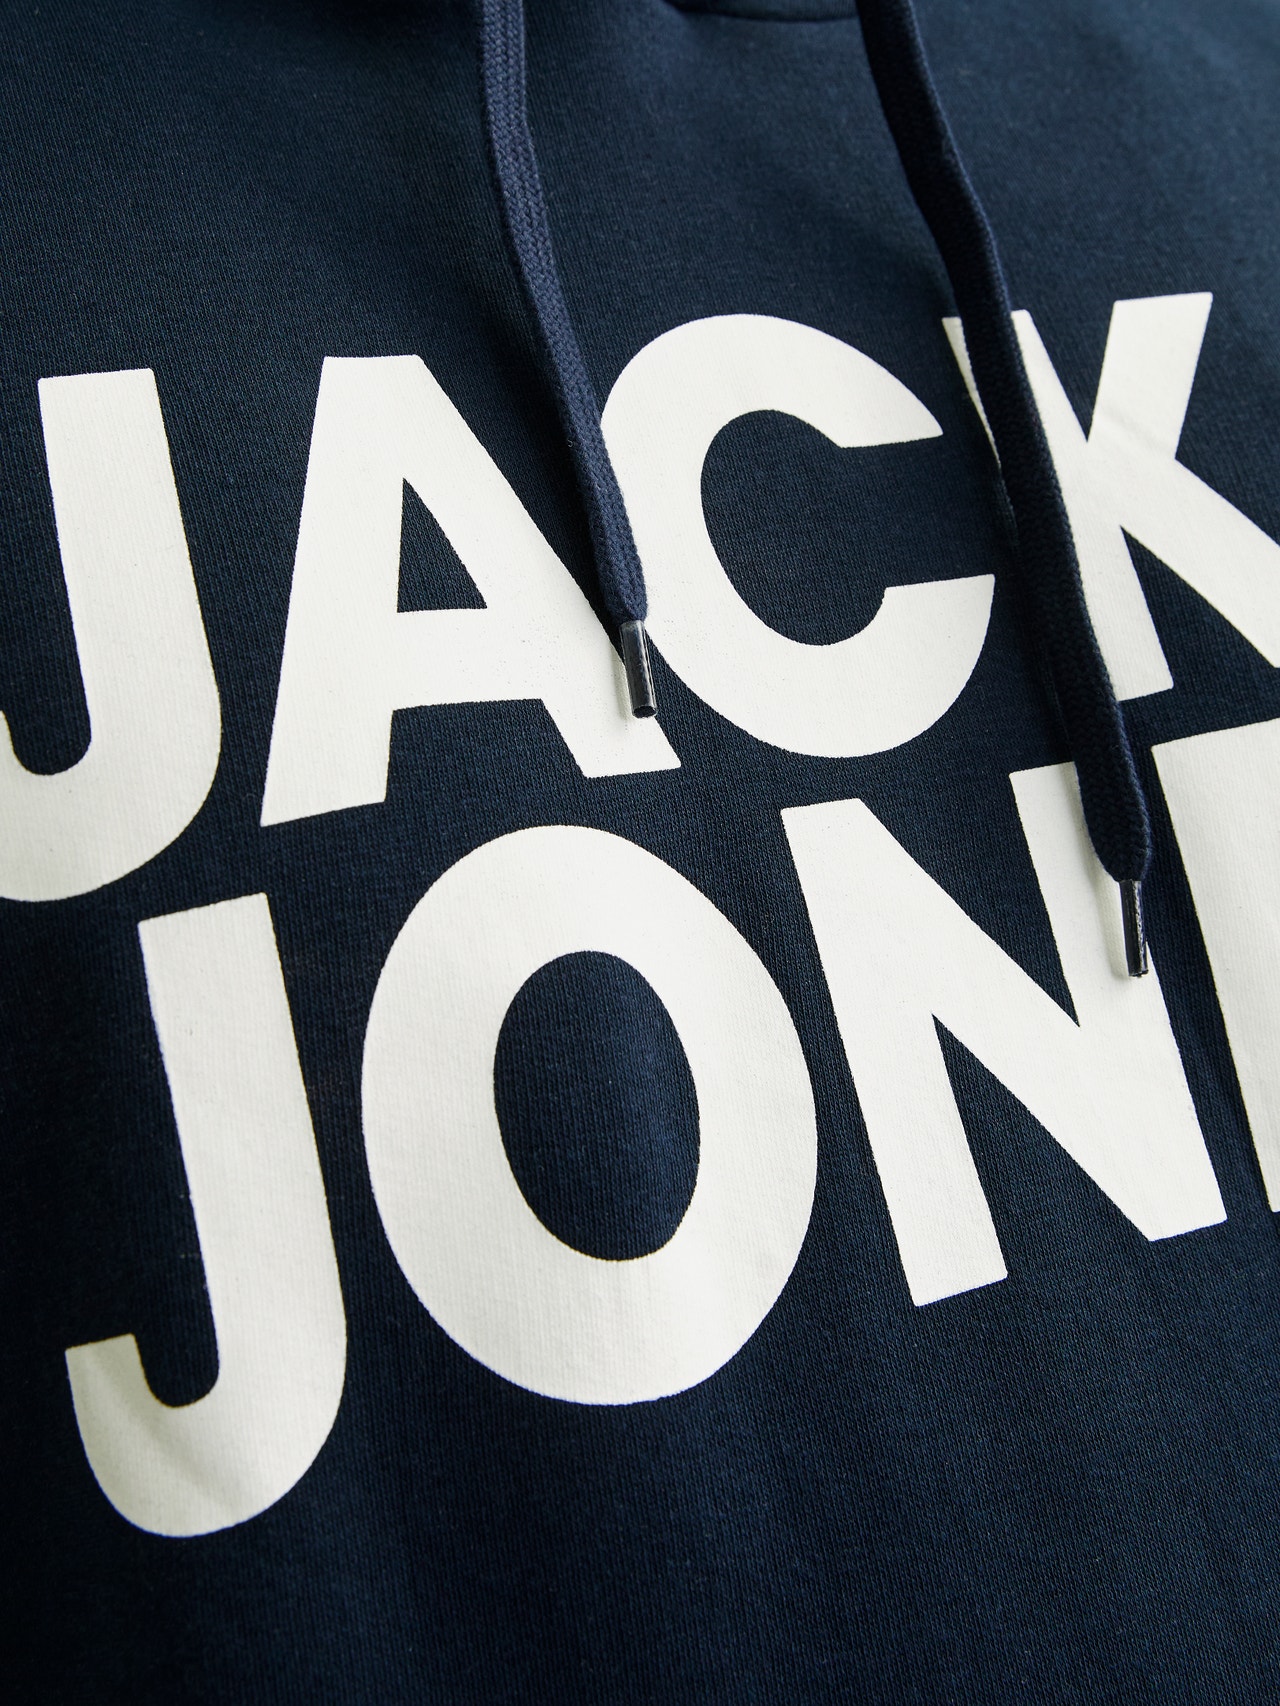 Jack & Jones Plus Size Logotipas Megztinis su gobtuvu -Navy Blazer - 12163777